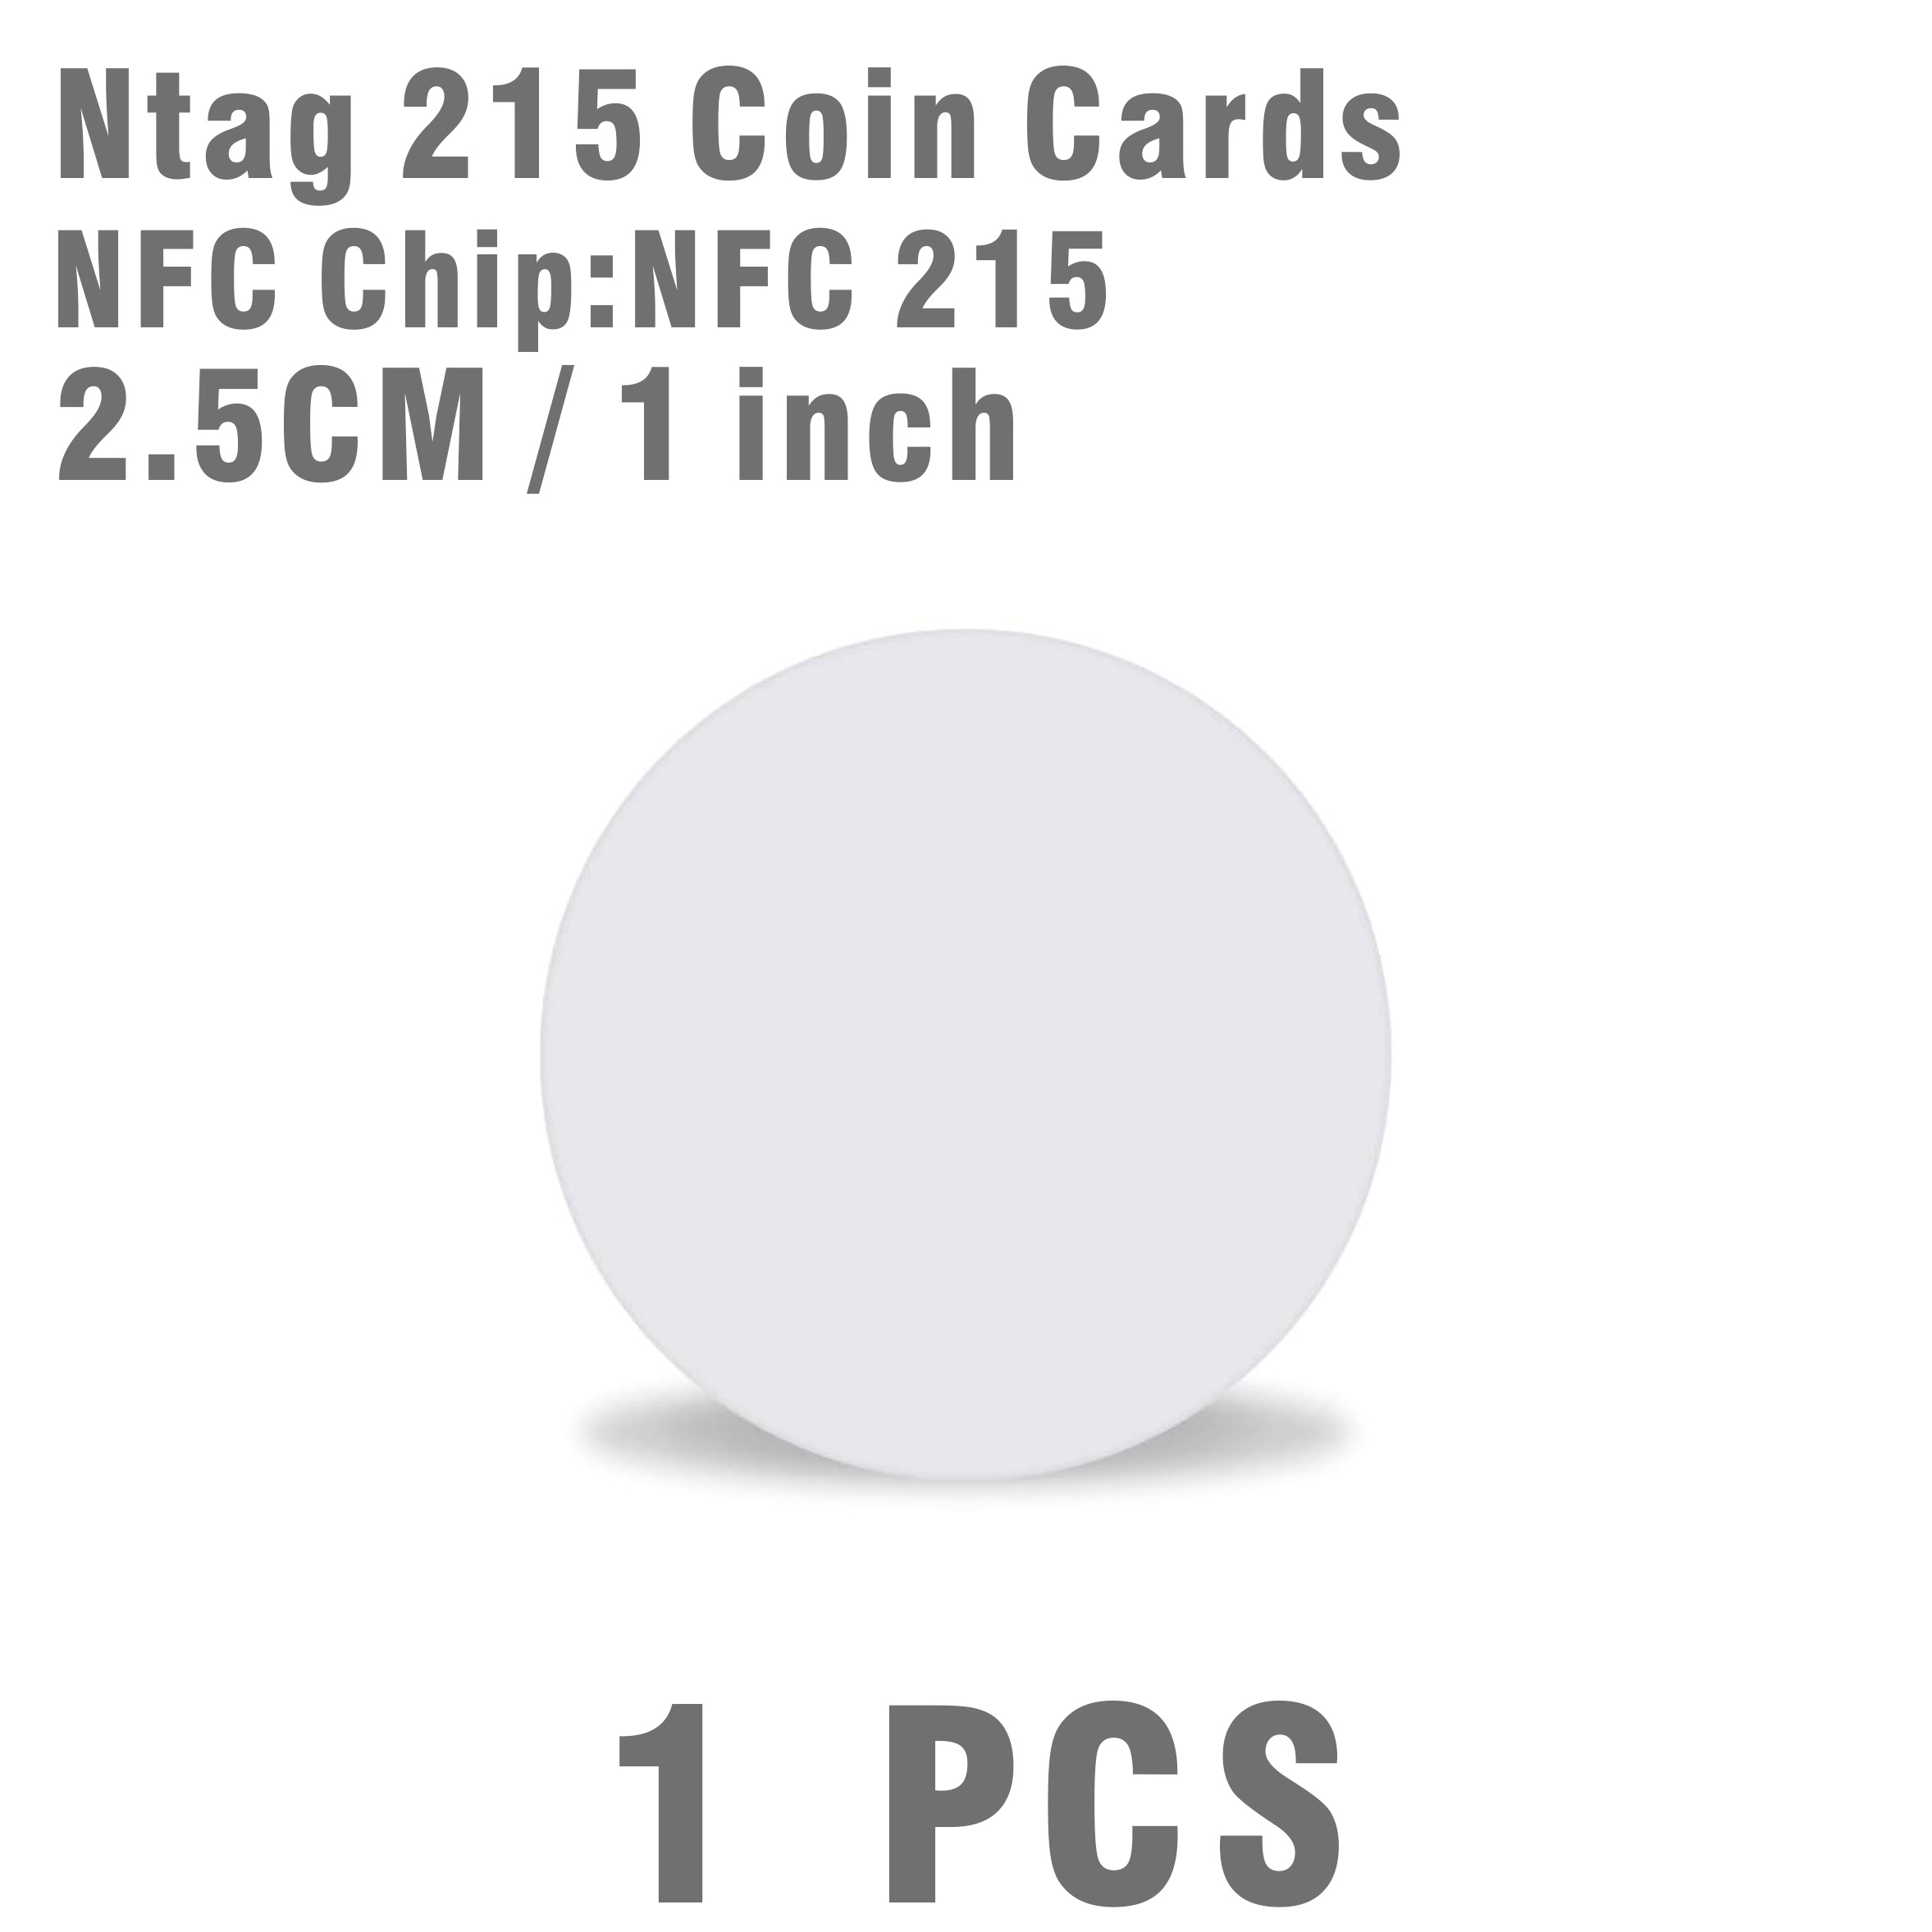  NFC Tags NFC Sticker Tags Ntag 215 NFC Cards NFC 215